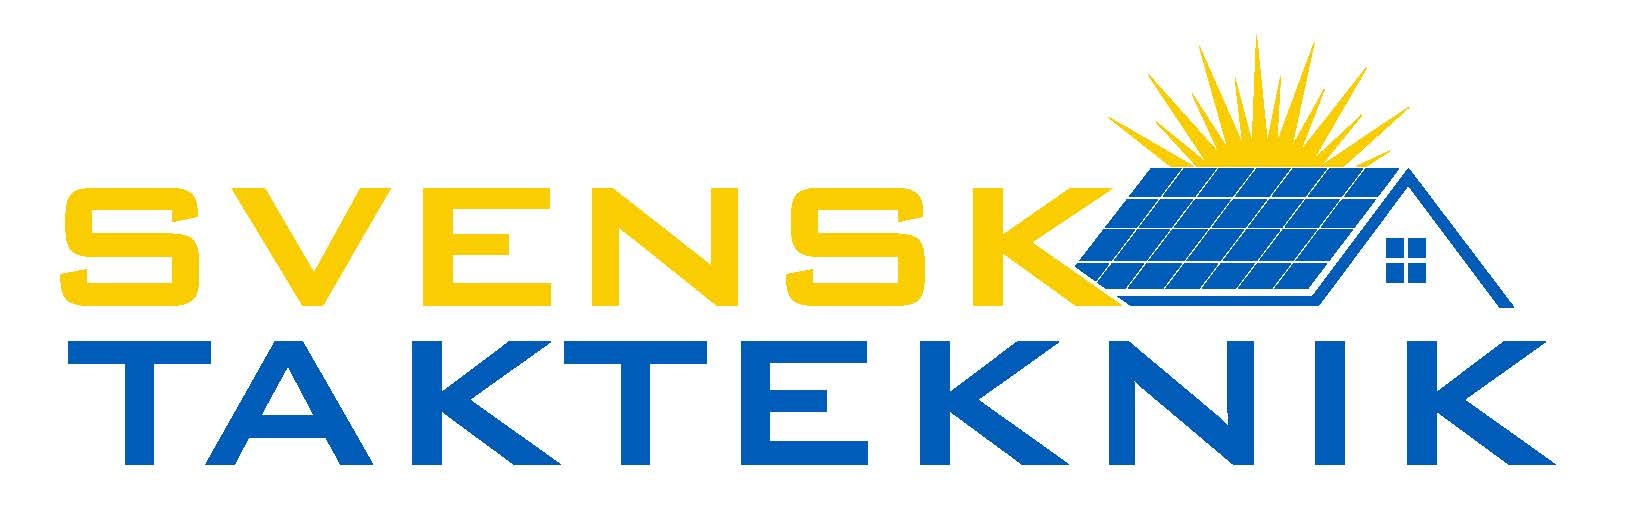 Svensk Takteknik AB - Solceller i Värmland